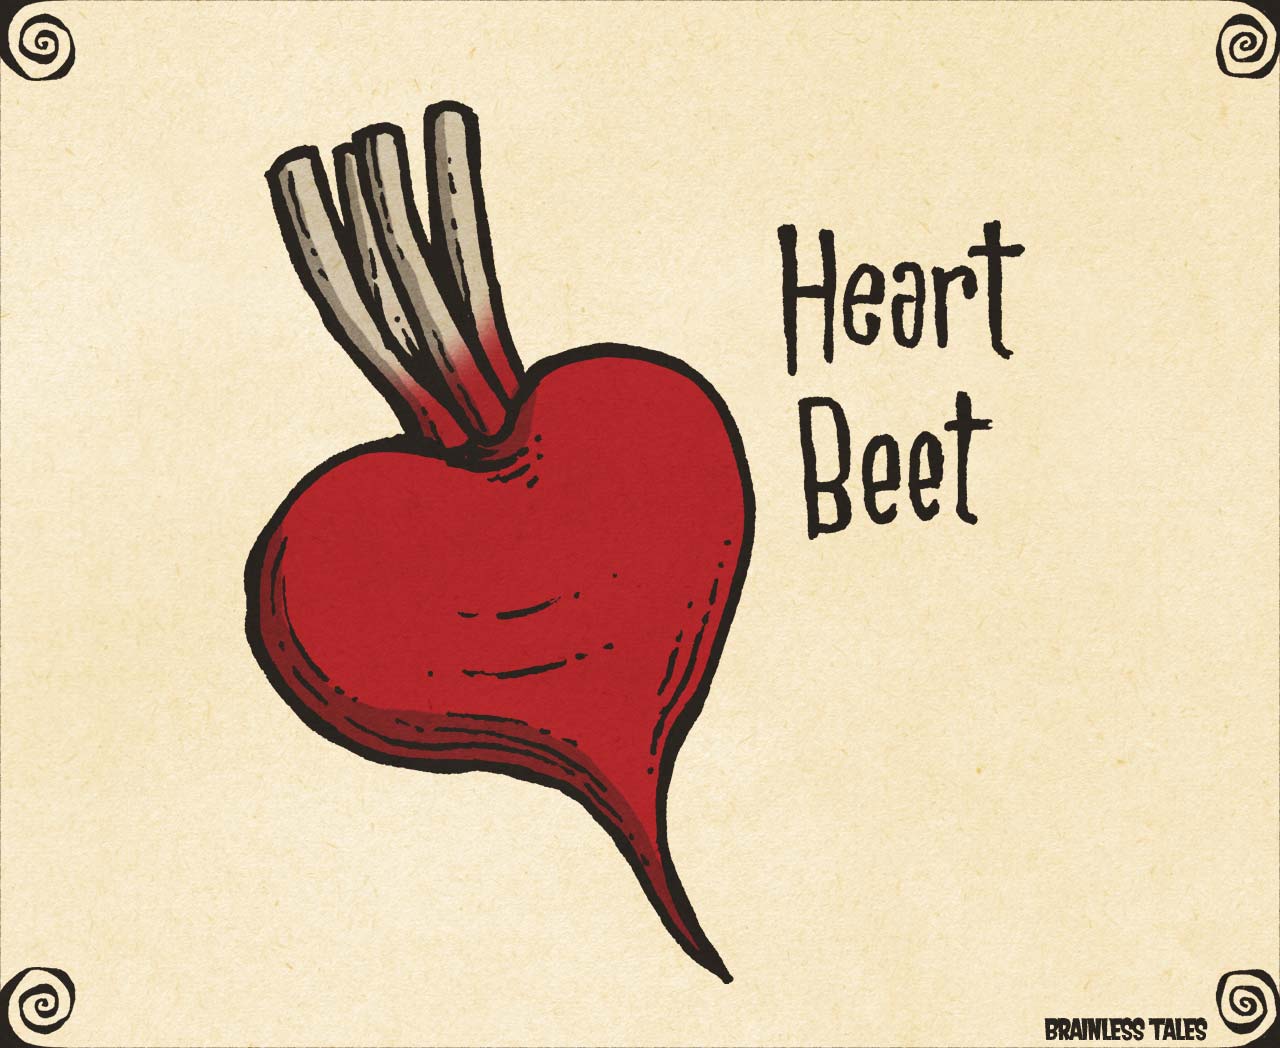 Heart Beet